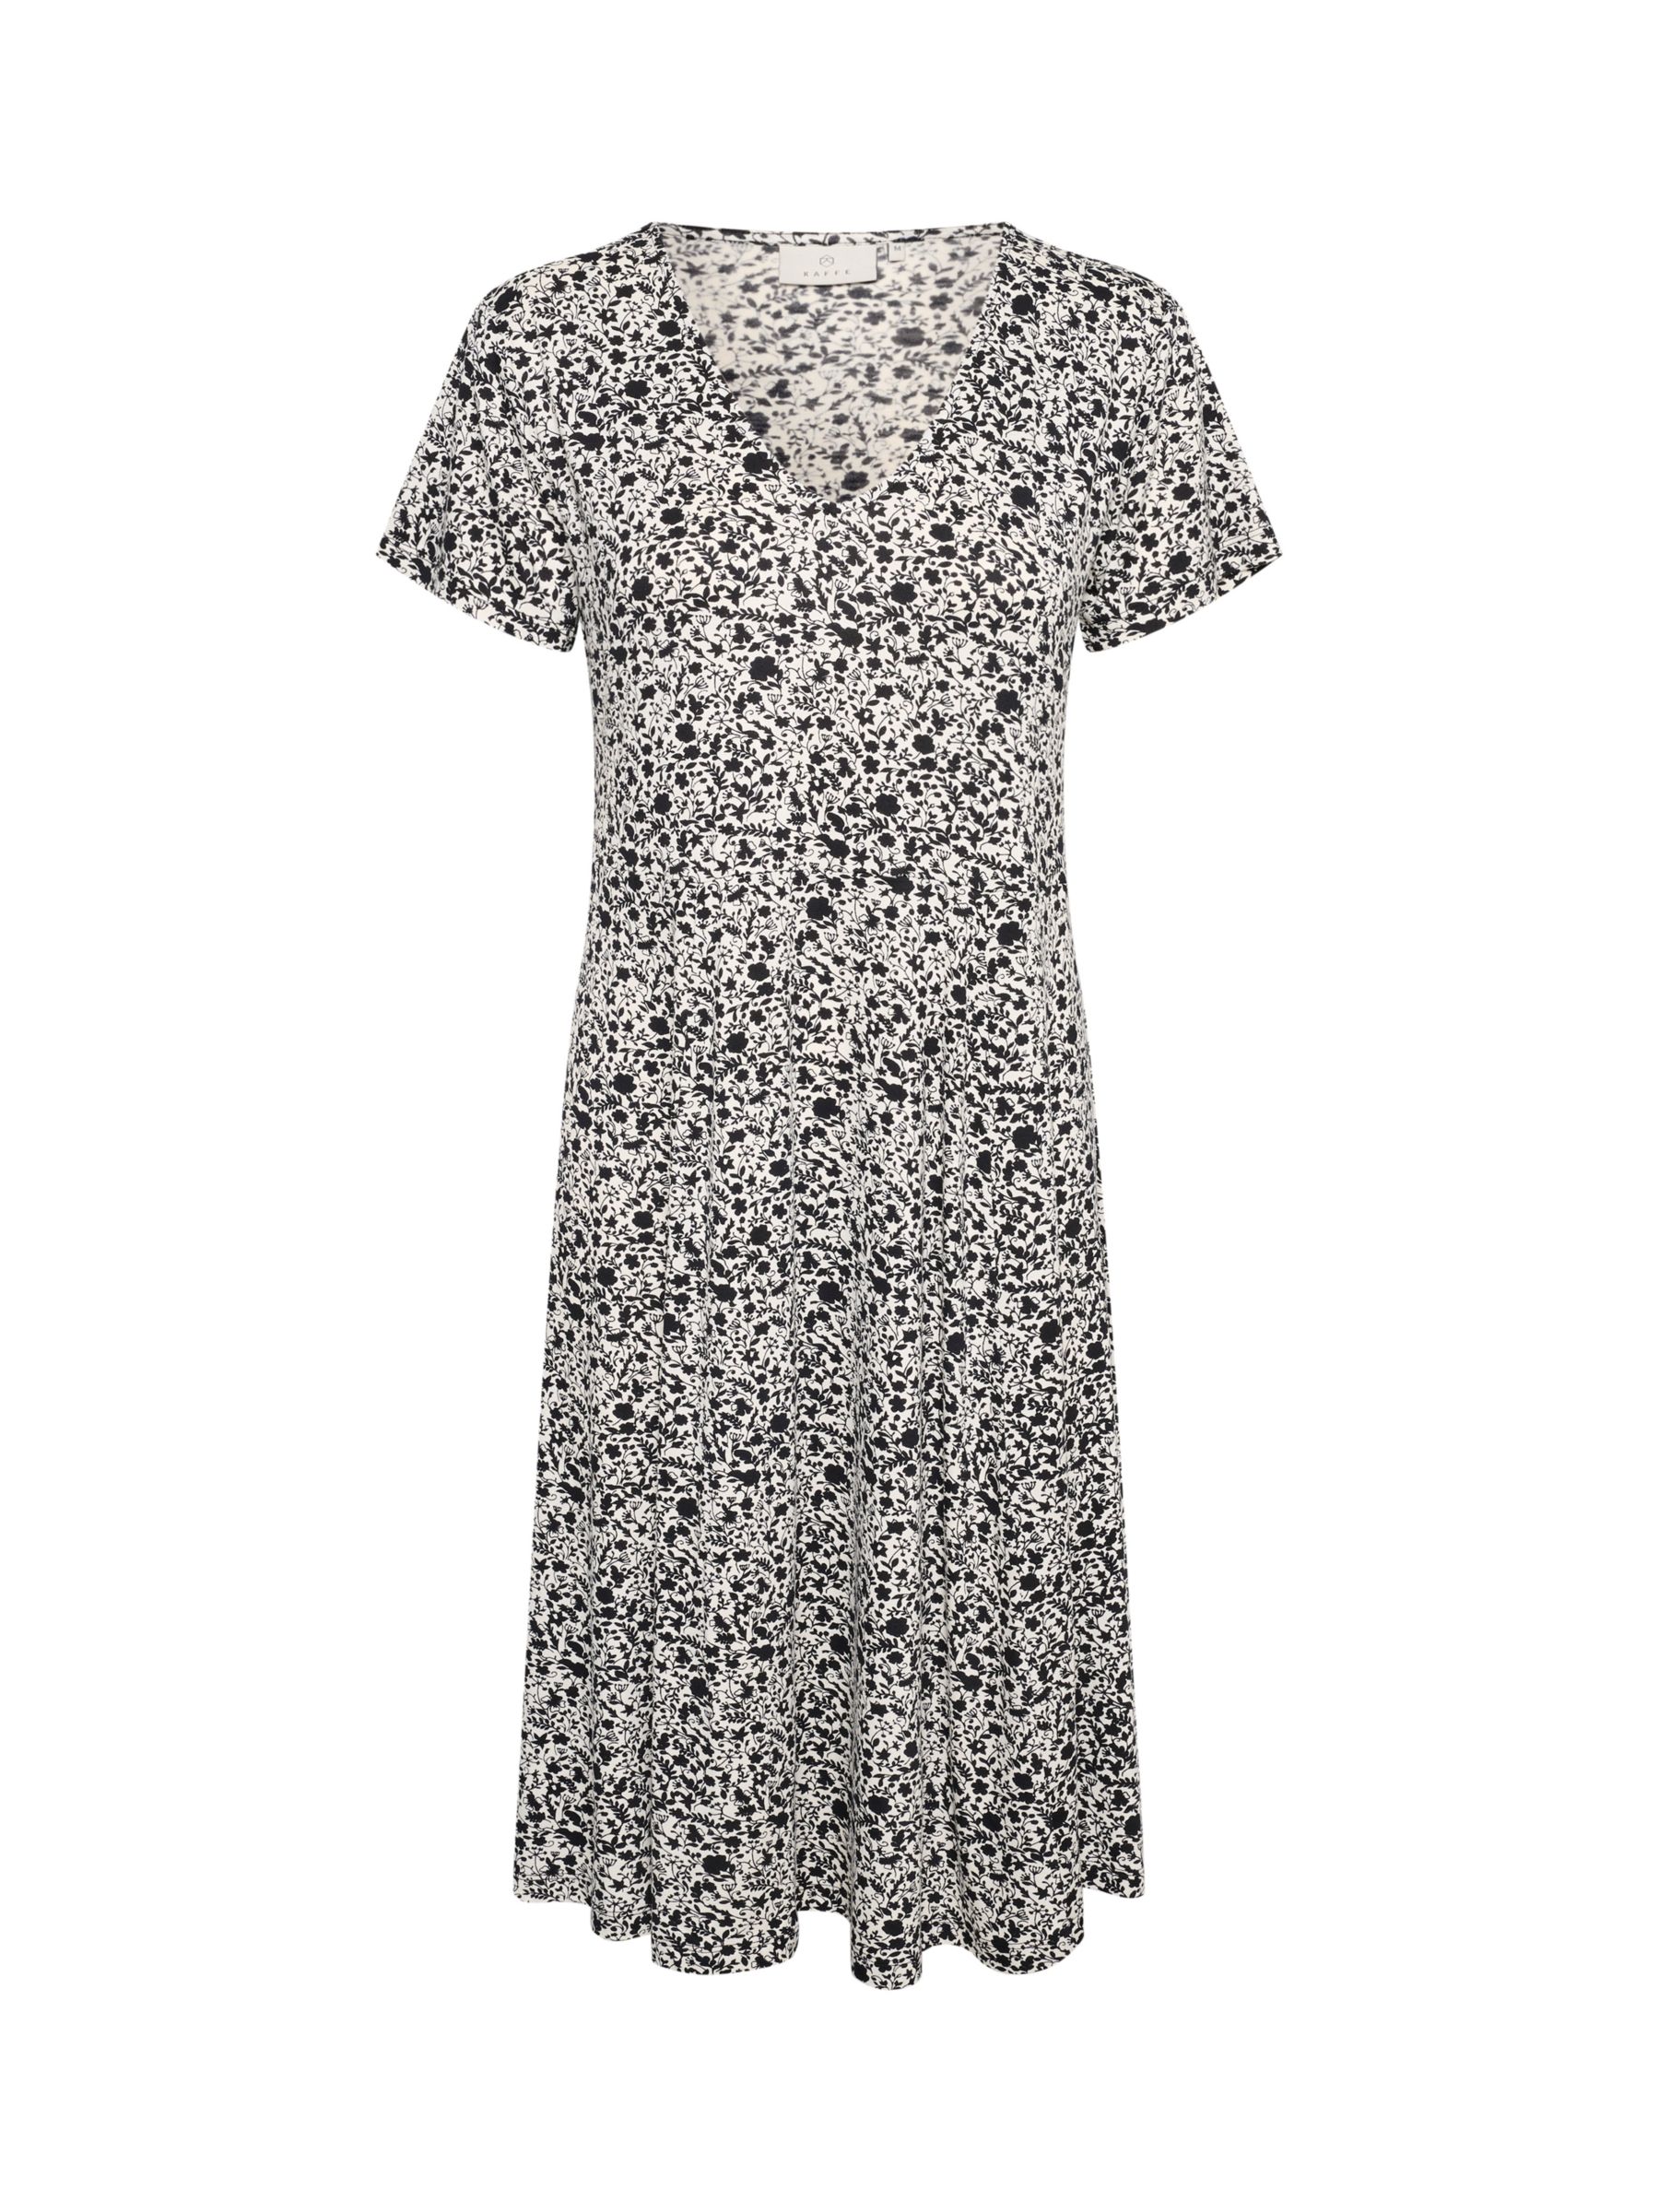 Buy KAFFE Mille Floral Print Jersey Dress, White/Black Online at johnlewis.com